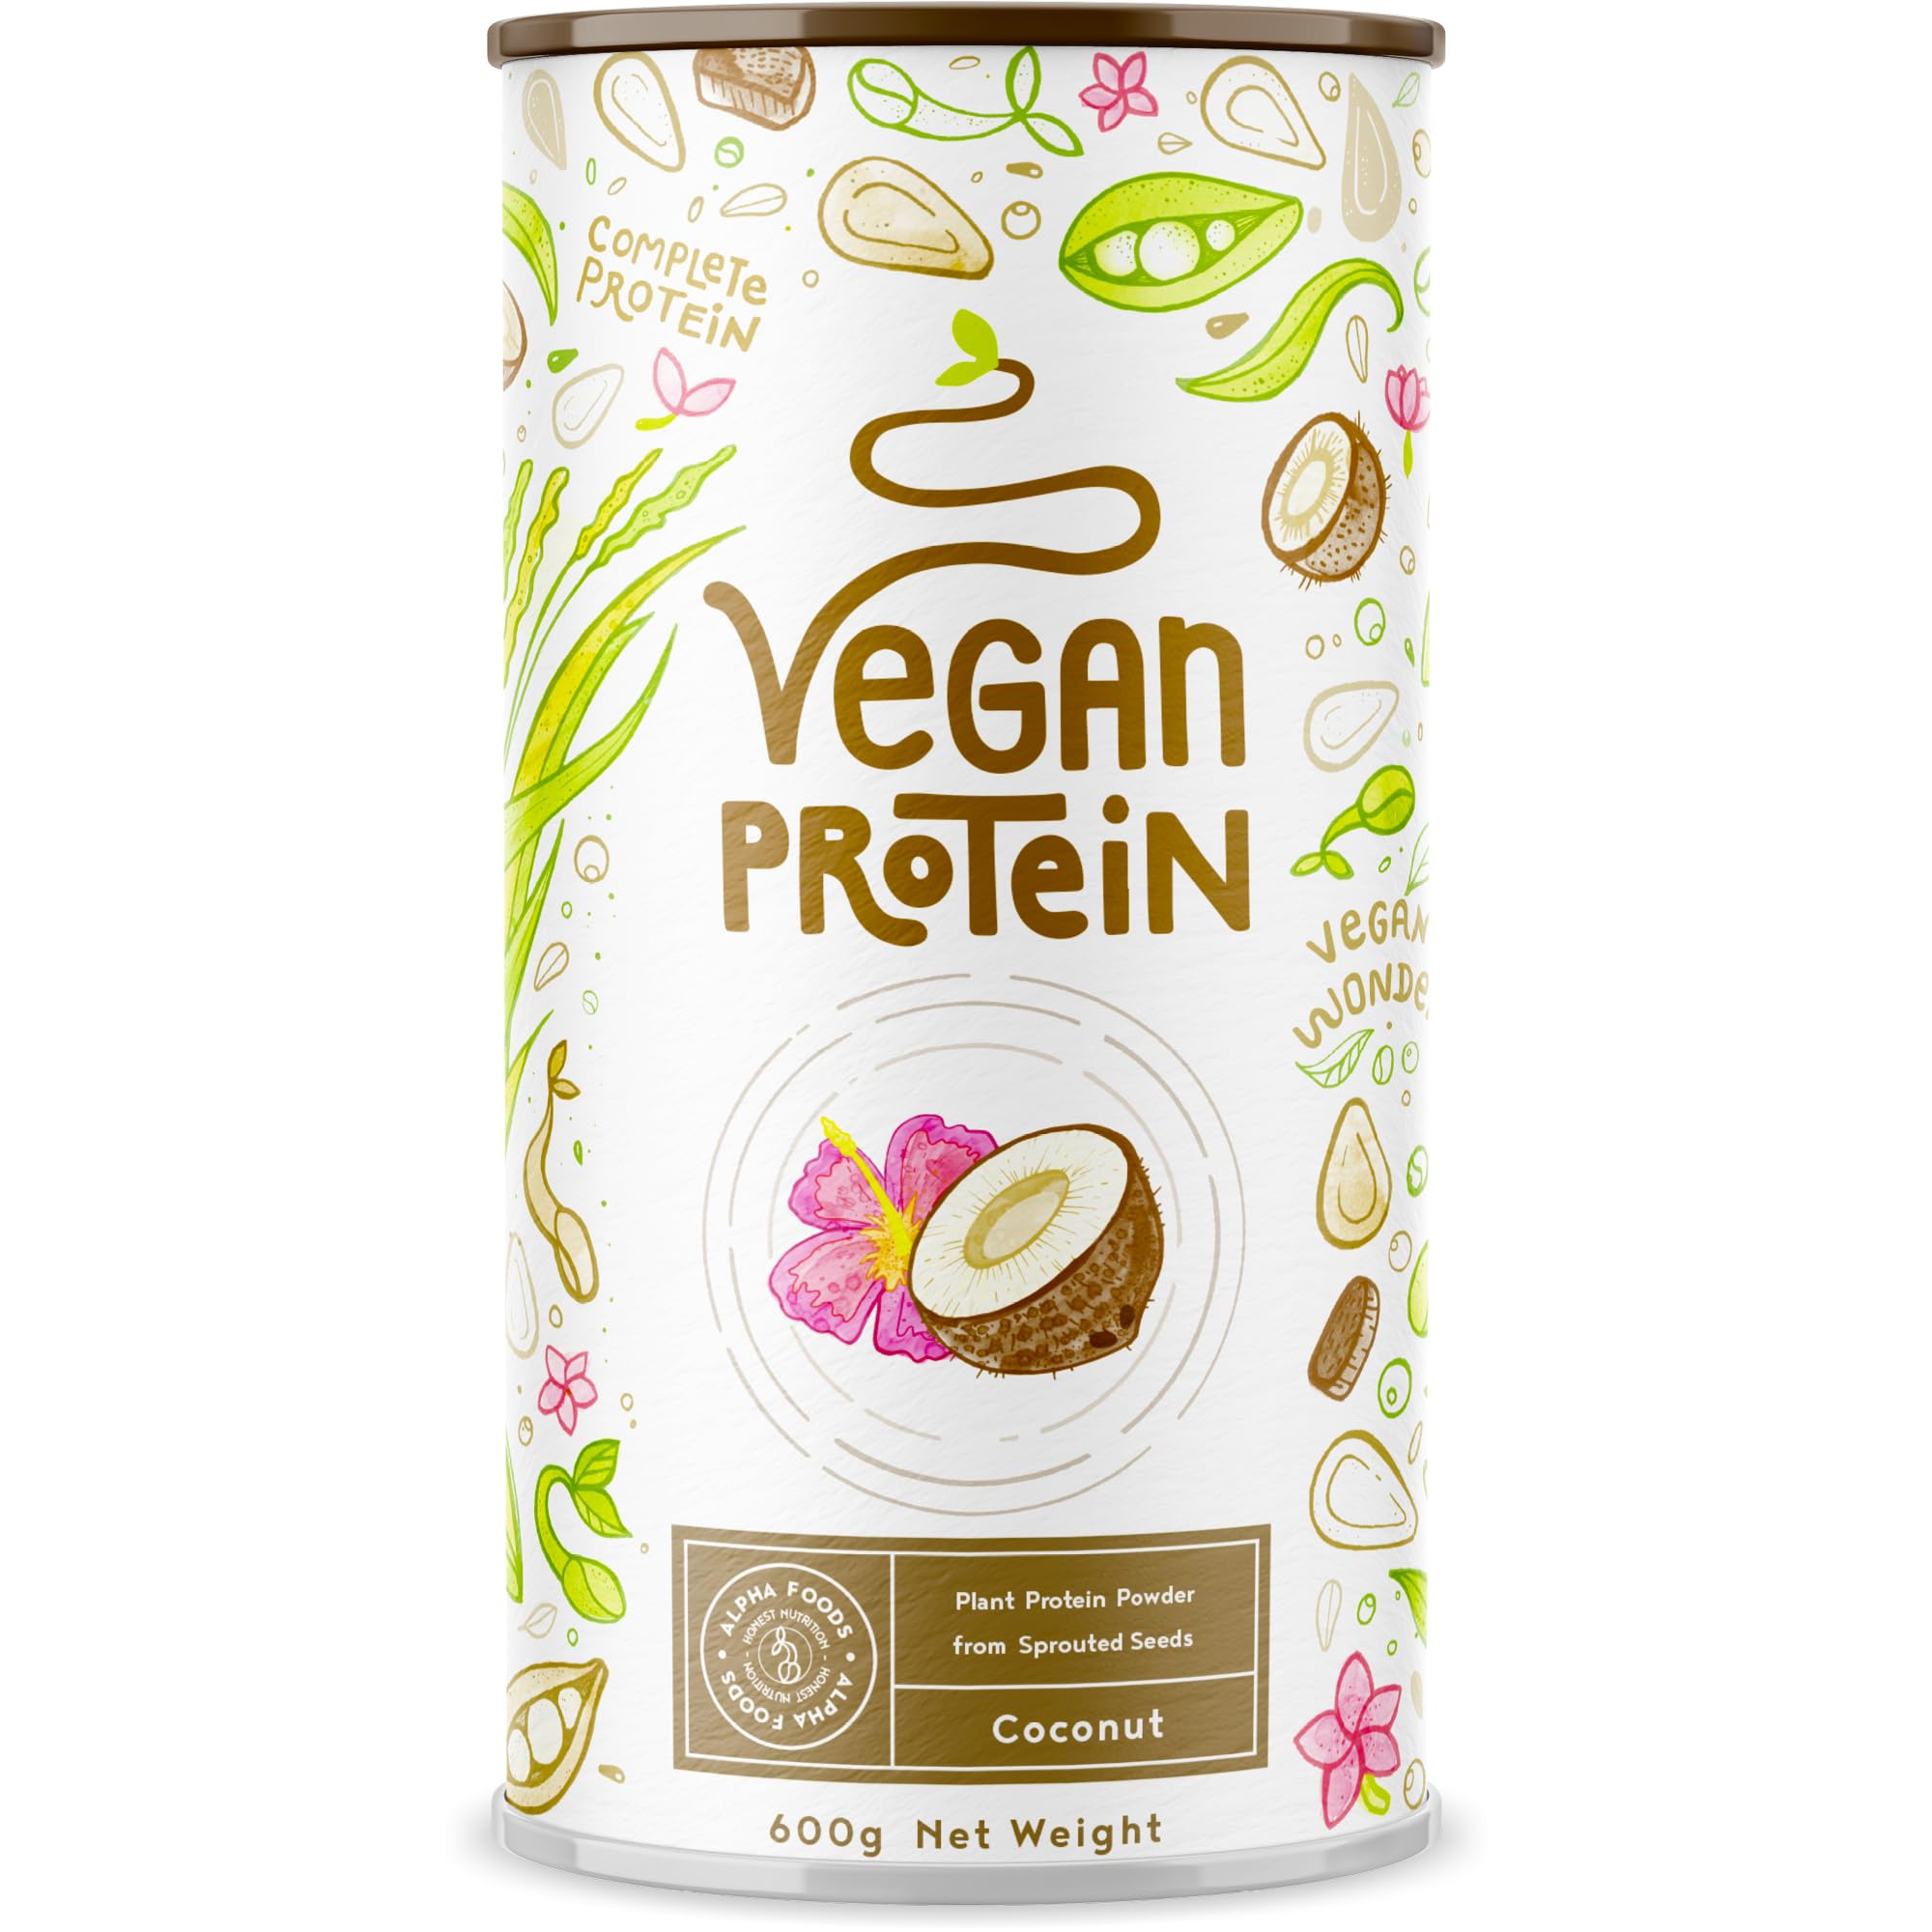 Vegan Protein - KOKOS - Pflanzliches Proteinpulver aus gesprossten Reis, Erbsen, Sojabohnen, Leinsamen, Amaranth, Sonnenblumen- und Kürbiskernen - 600 Gramm Pulver